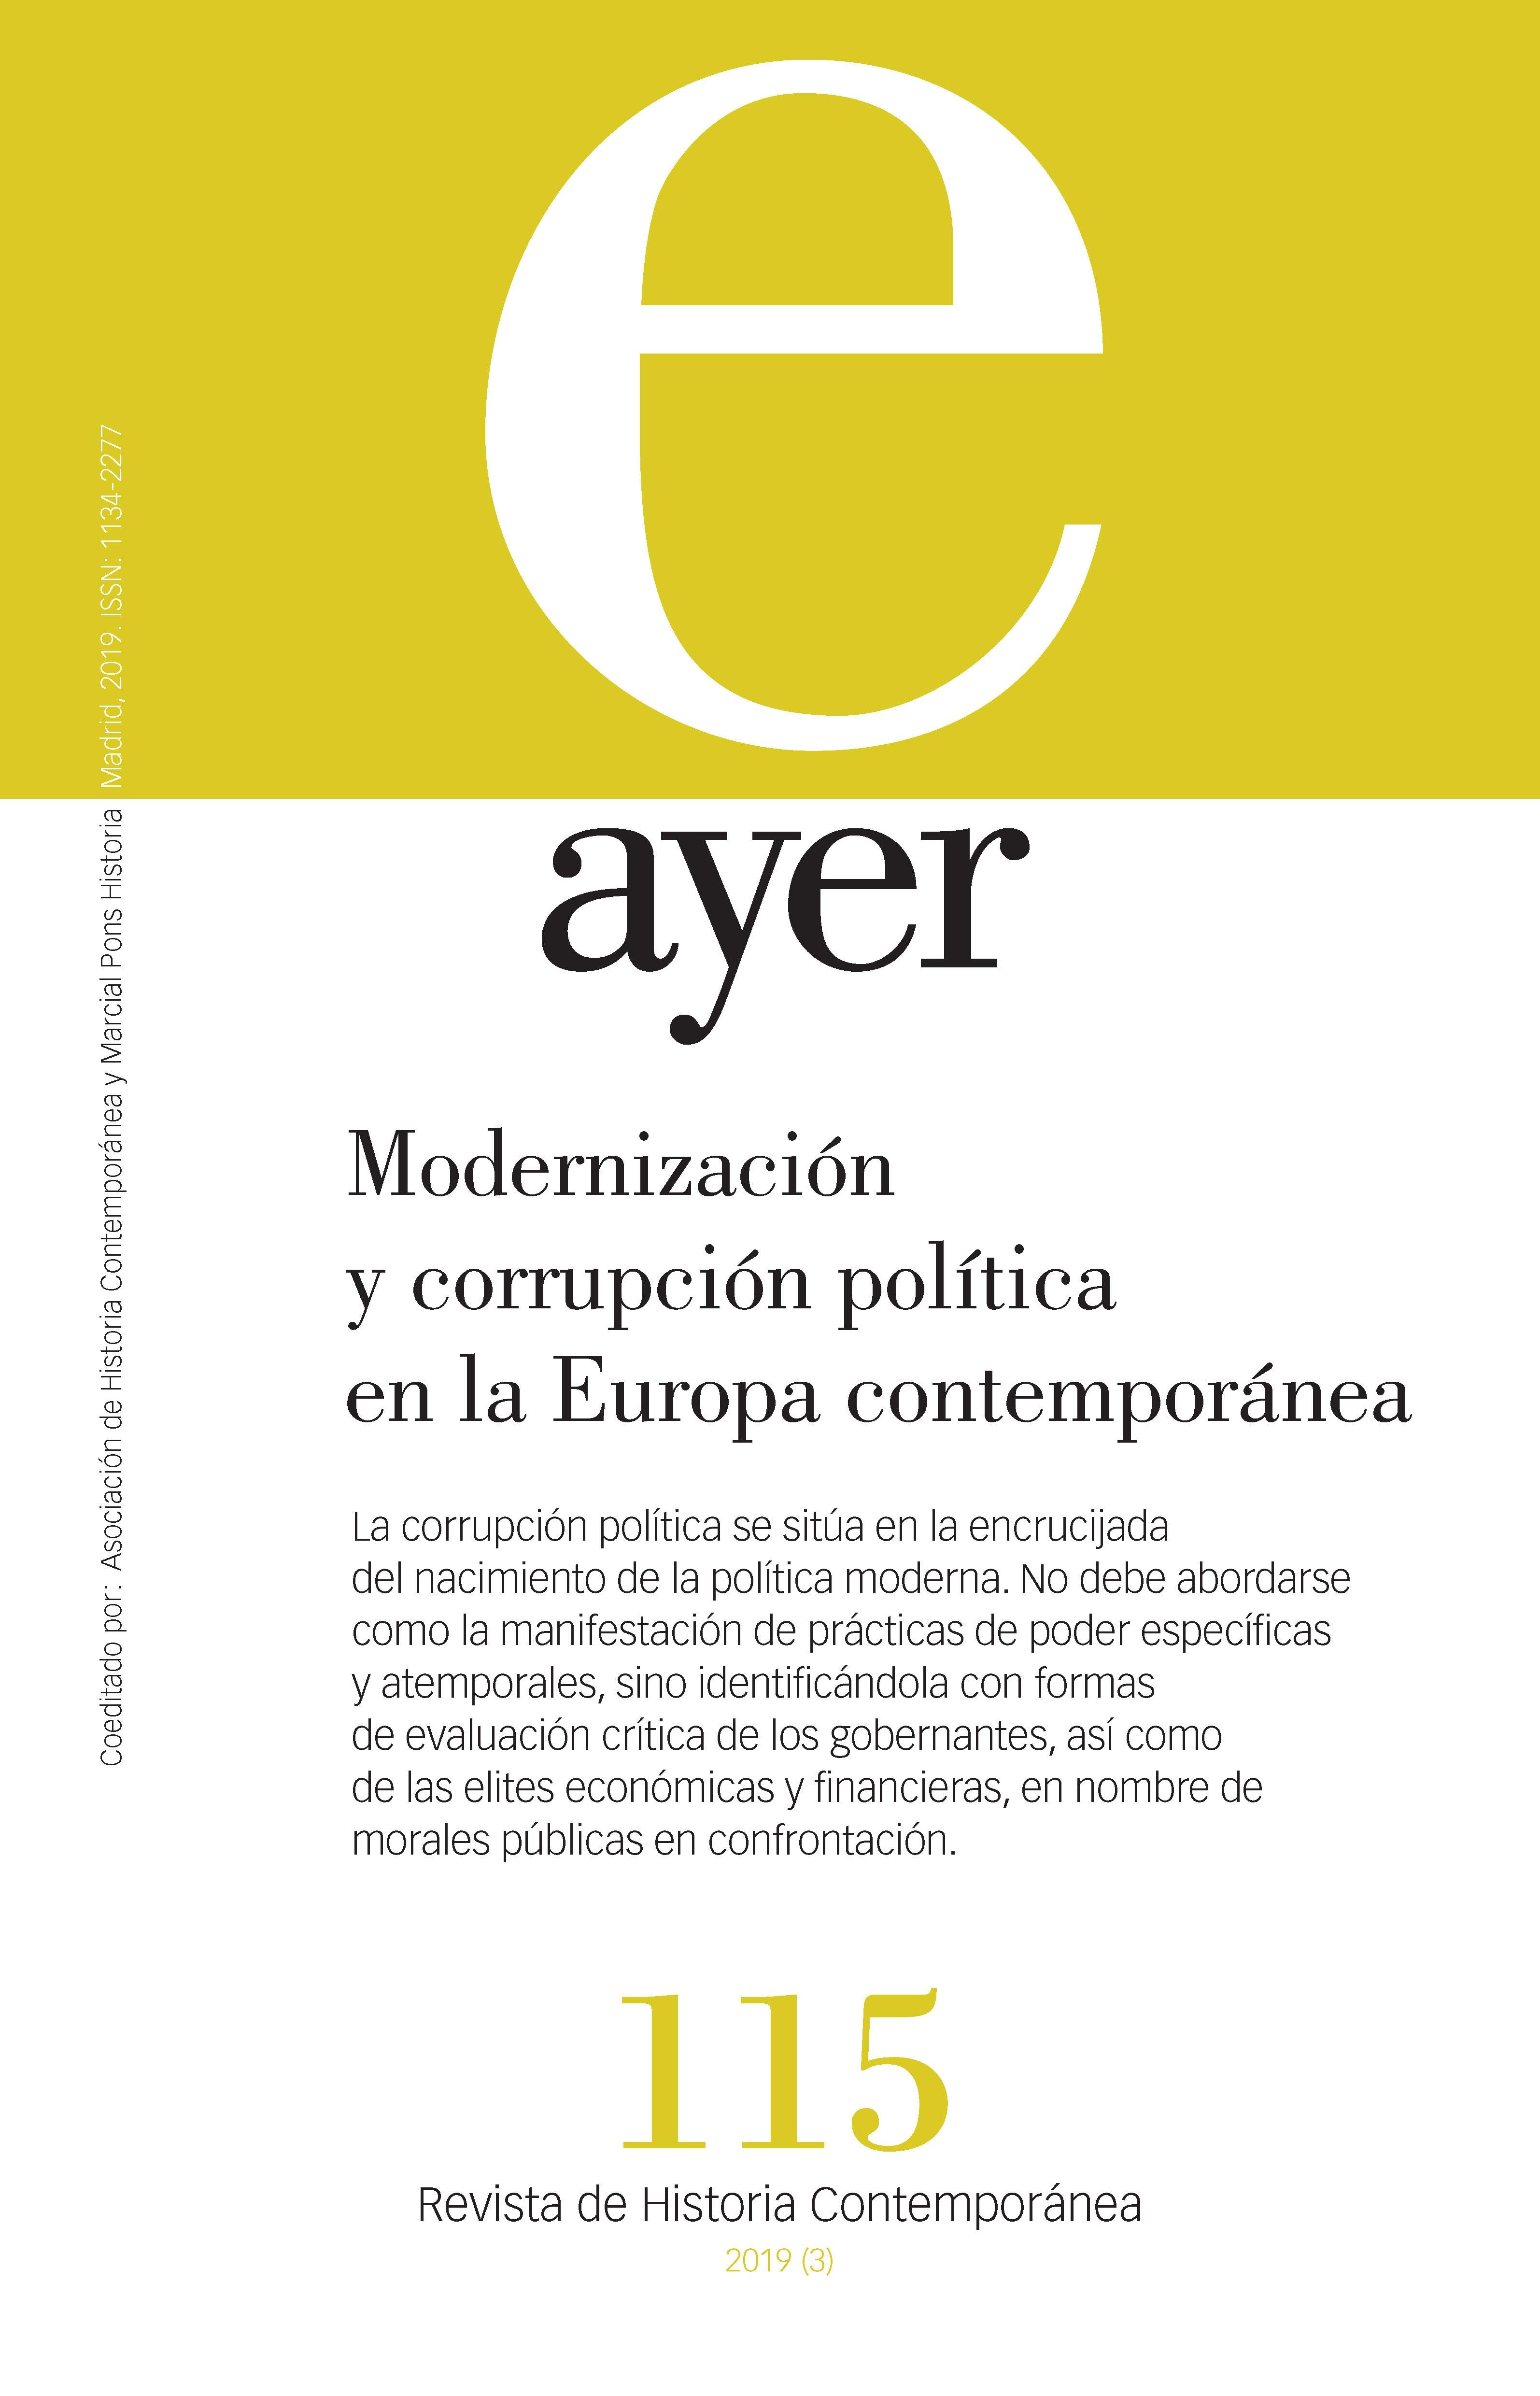 Revista Ayer nº 115: Modernización y corrupción política en la Europa contemporánea. 